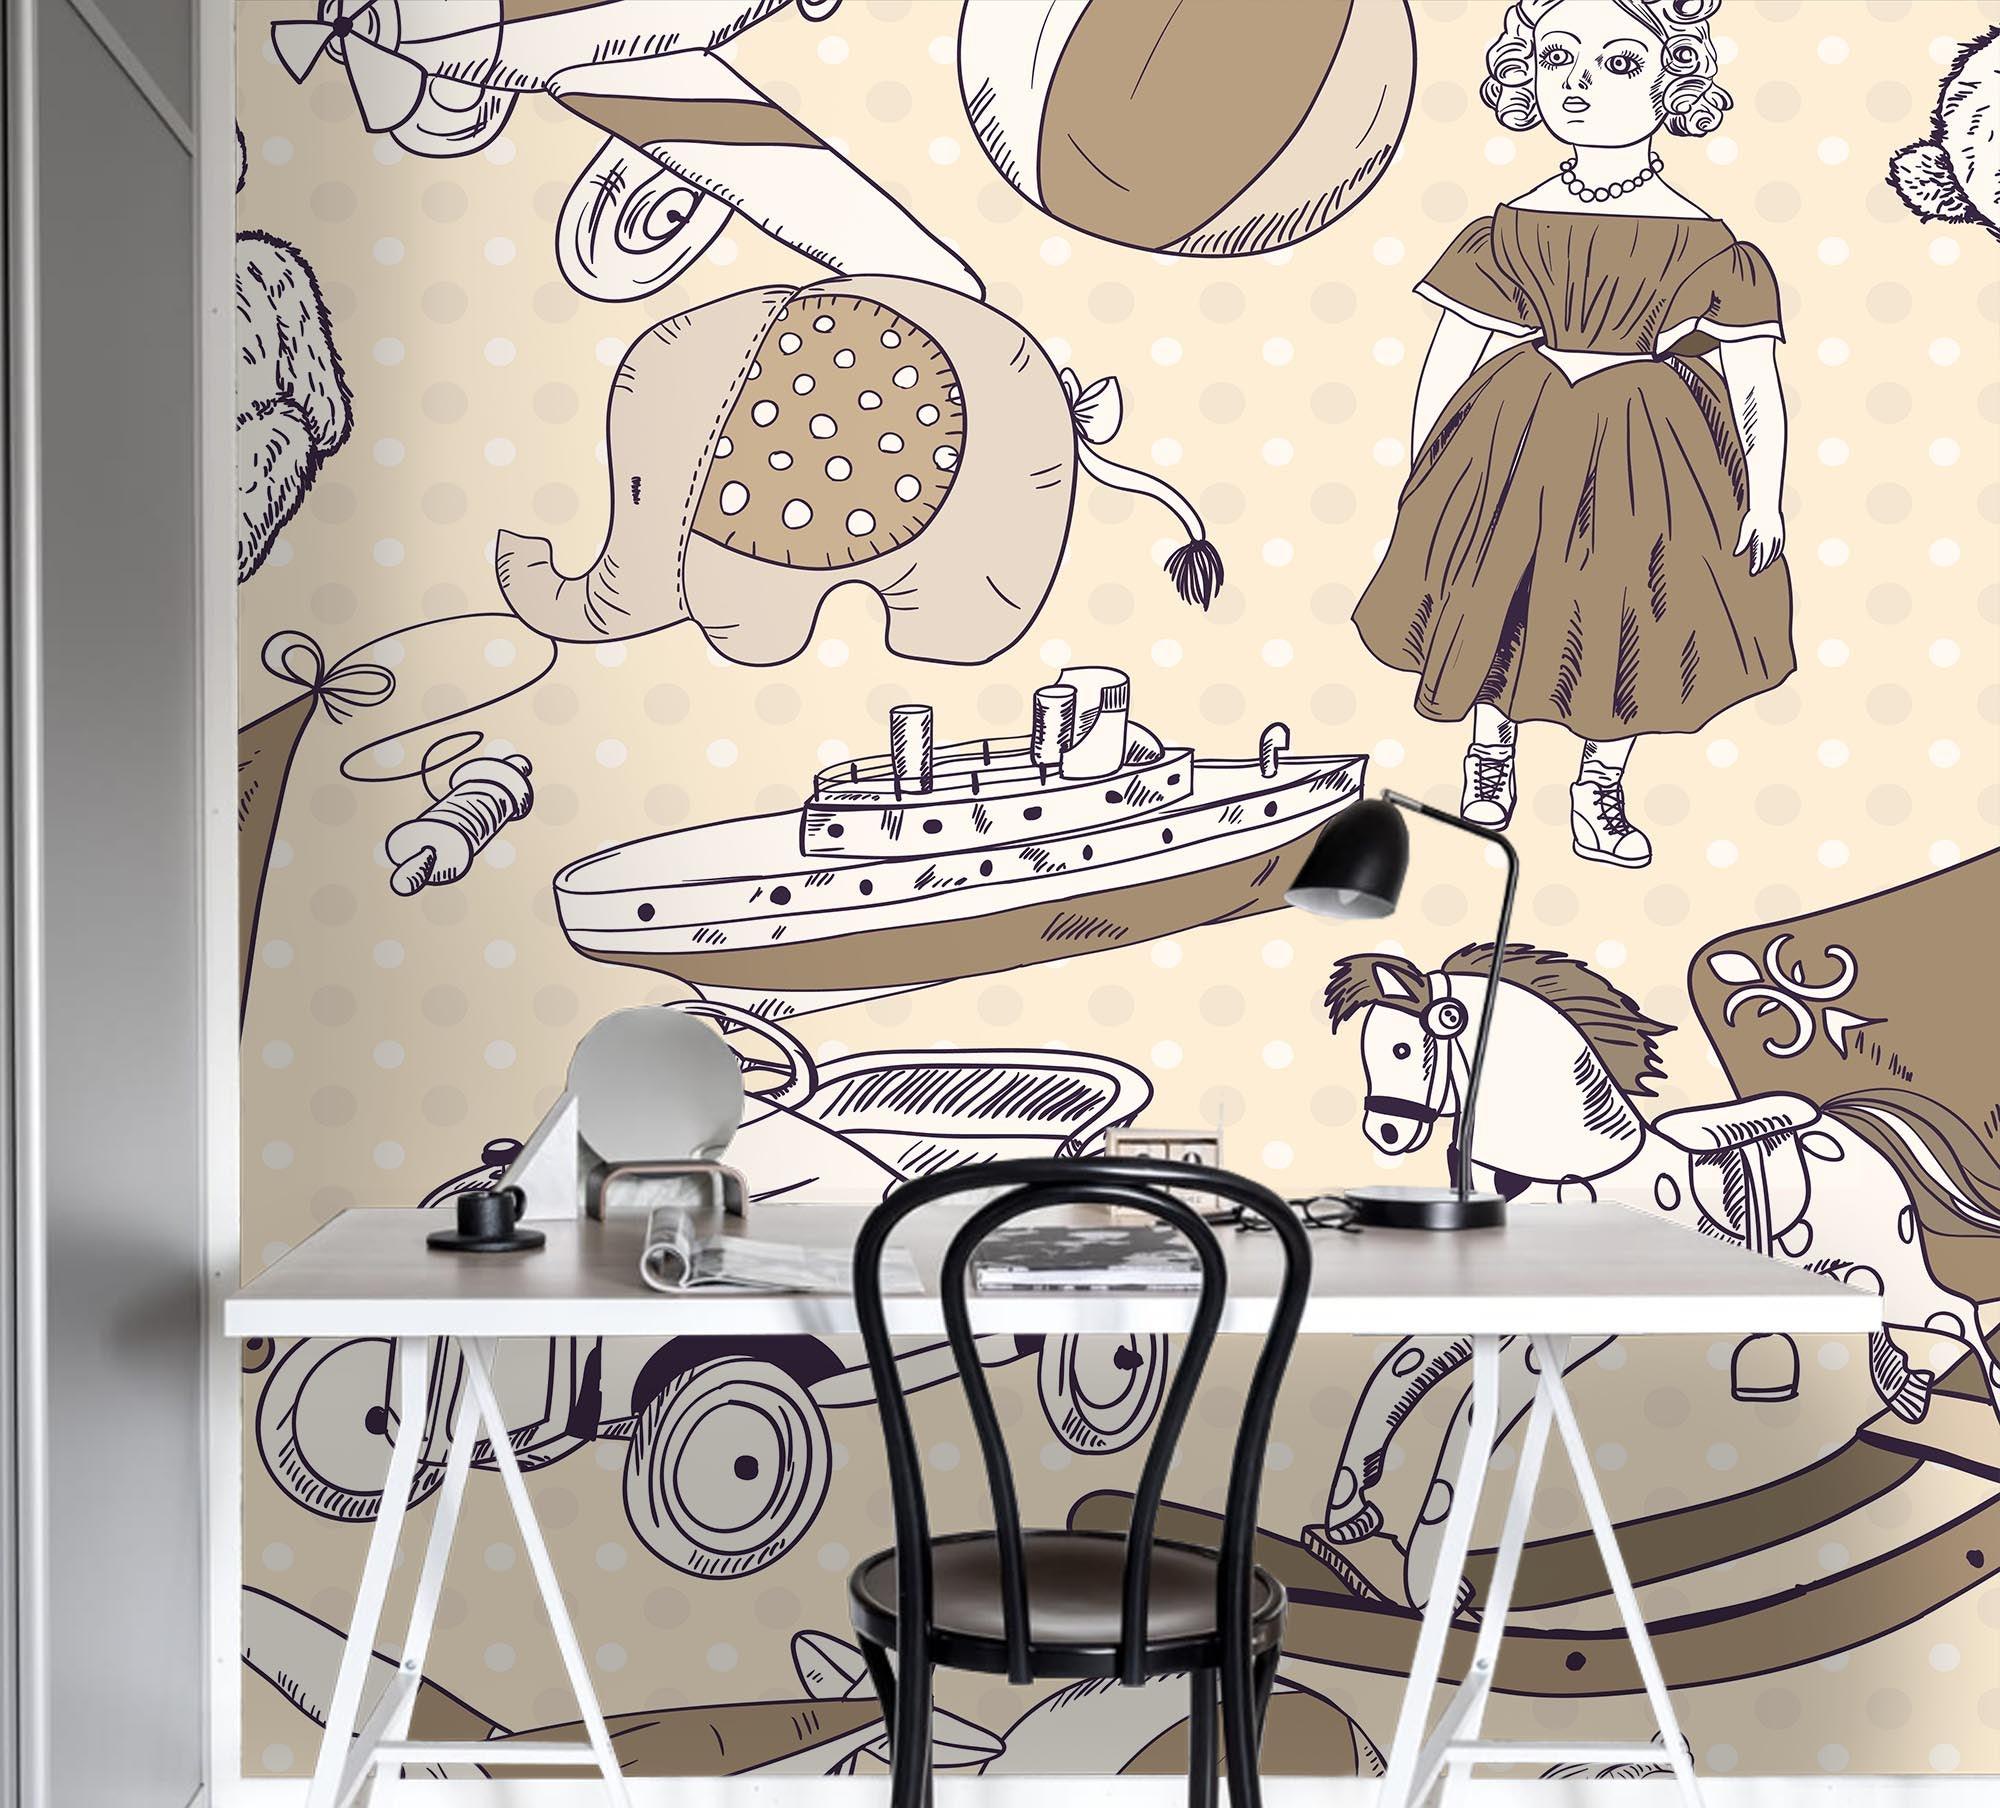 3D Cartoon Girl Animal Car Wall Mural Wallpaper A212 LQH- Jess Art Decoration